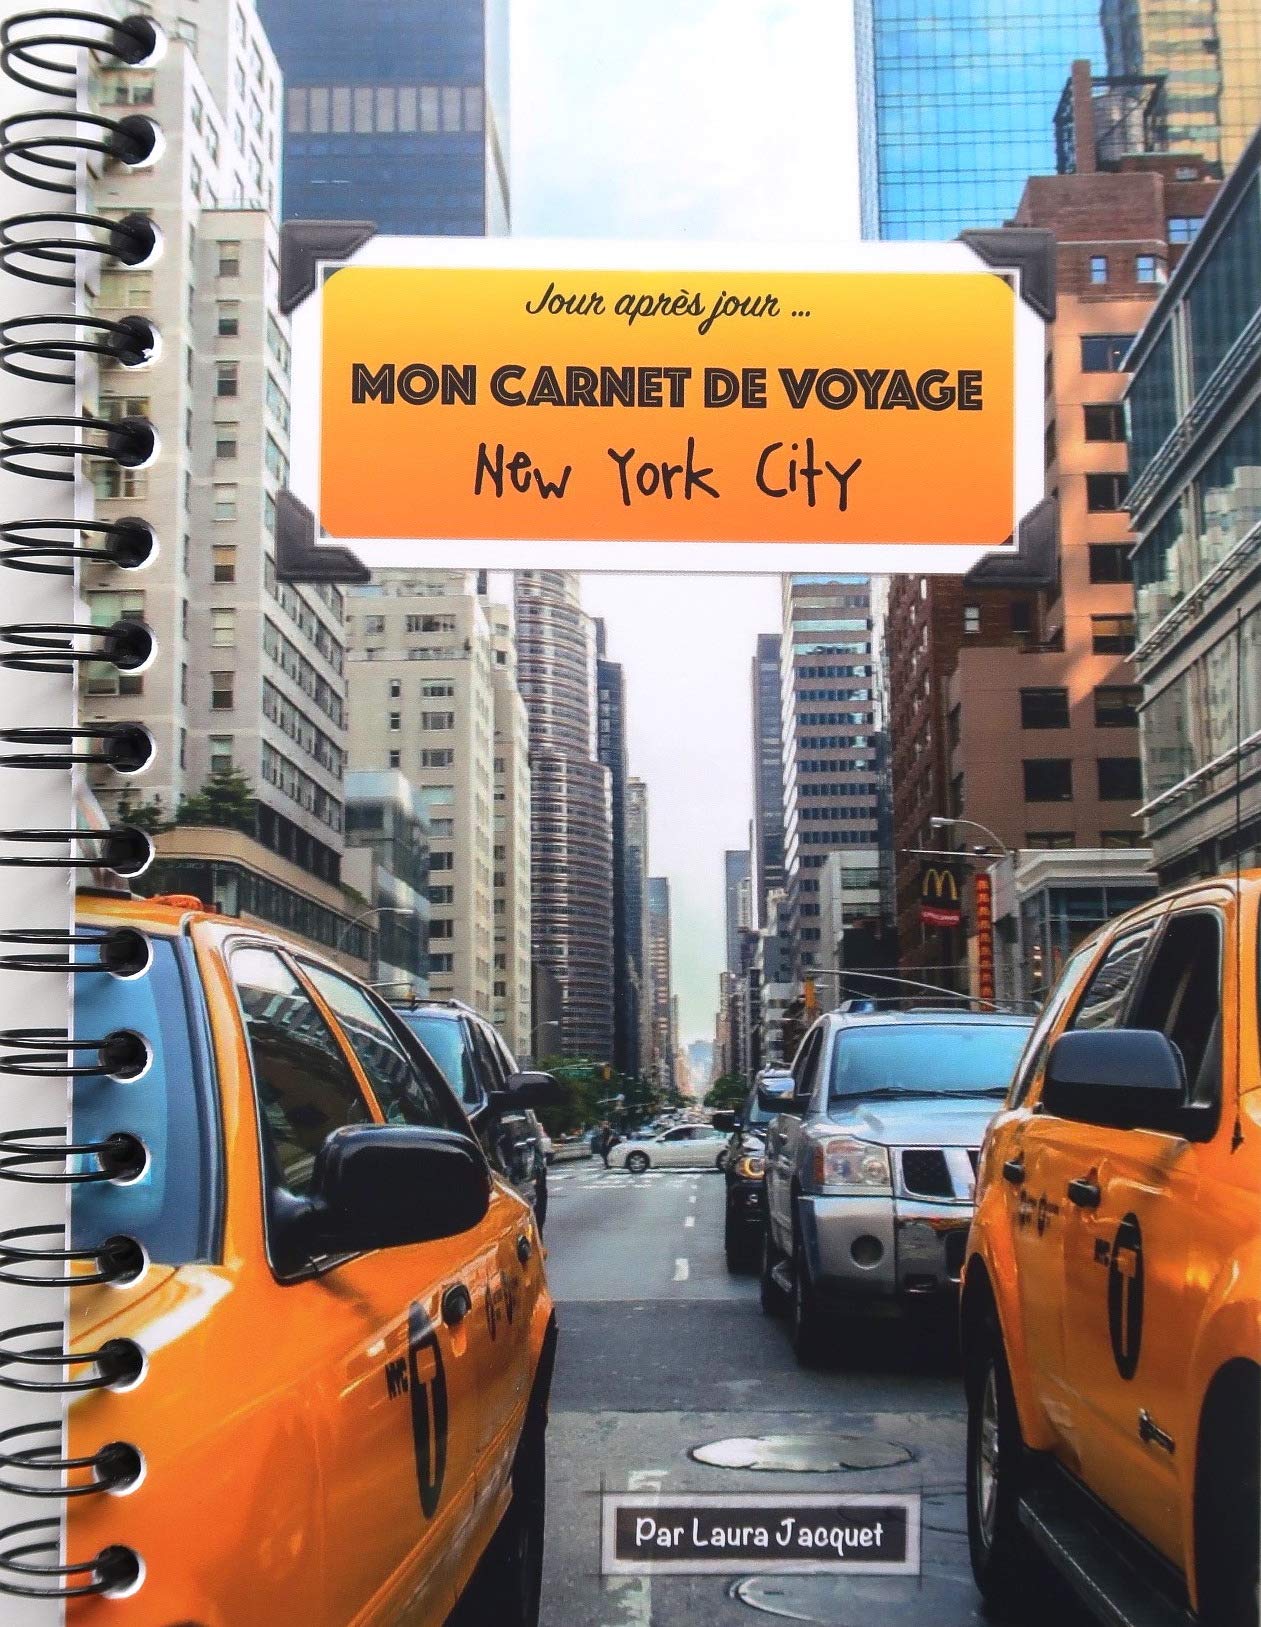 Carnet de voyage : premières heures à New York